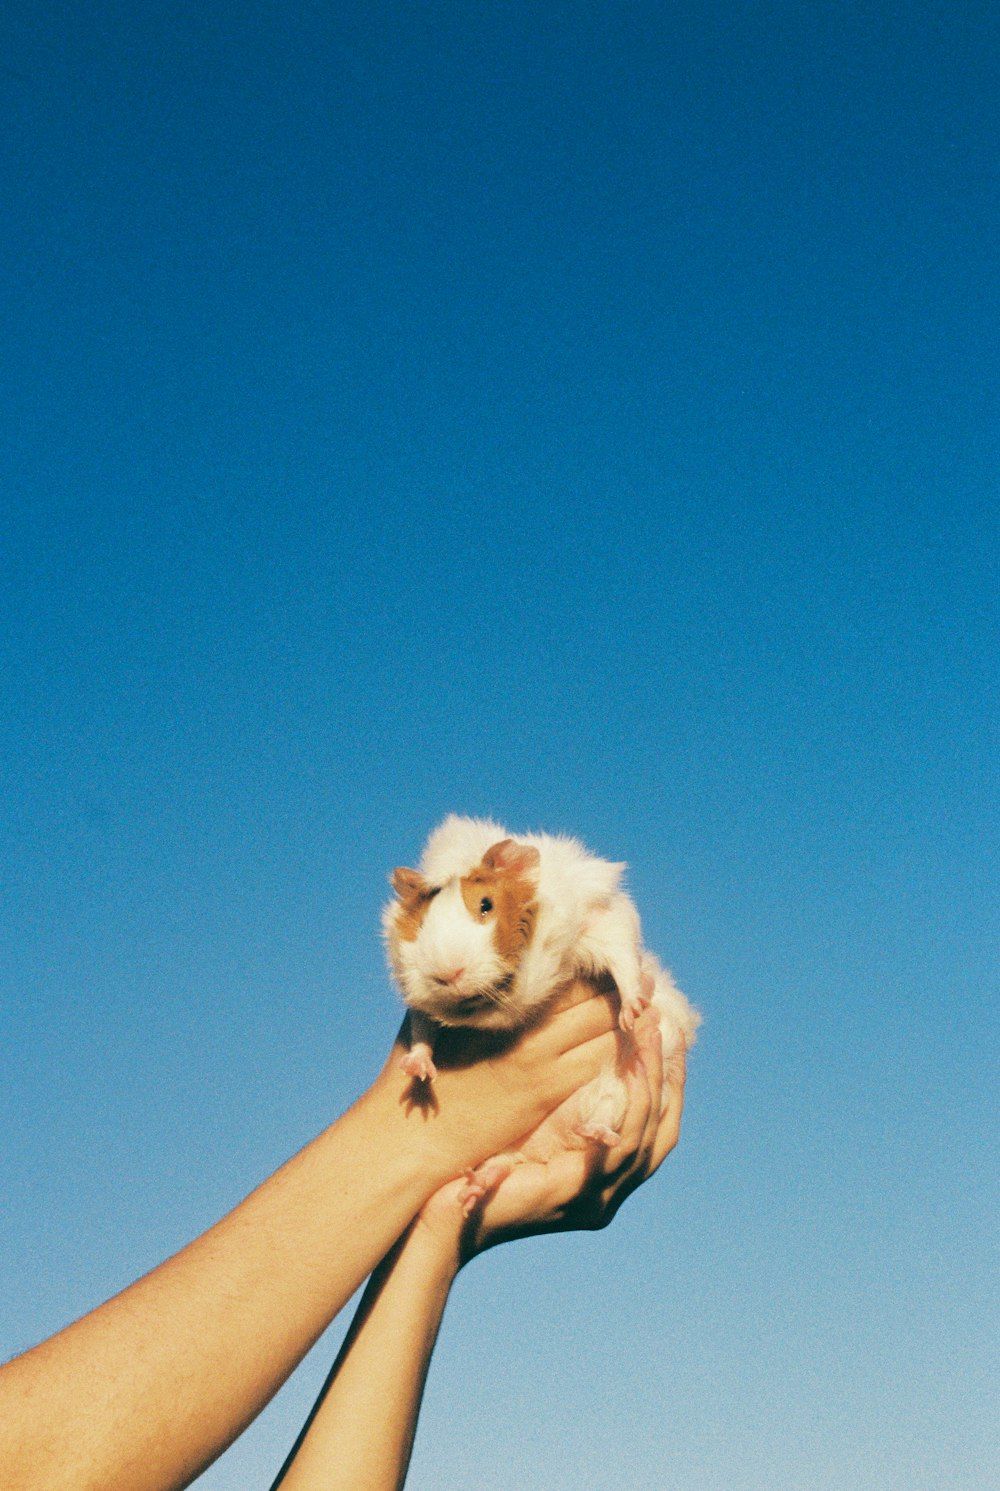  Meerschweinchen Hintergrundbild 1000x1491. Foto zum Thema Person, die einen weißen, langhaarigen kleinen Hund hält